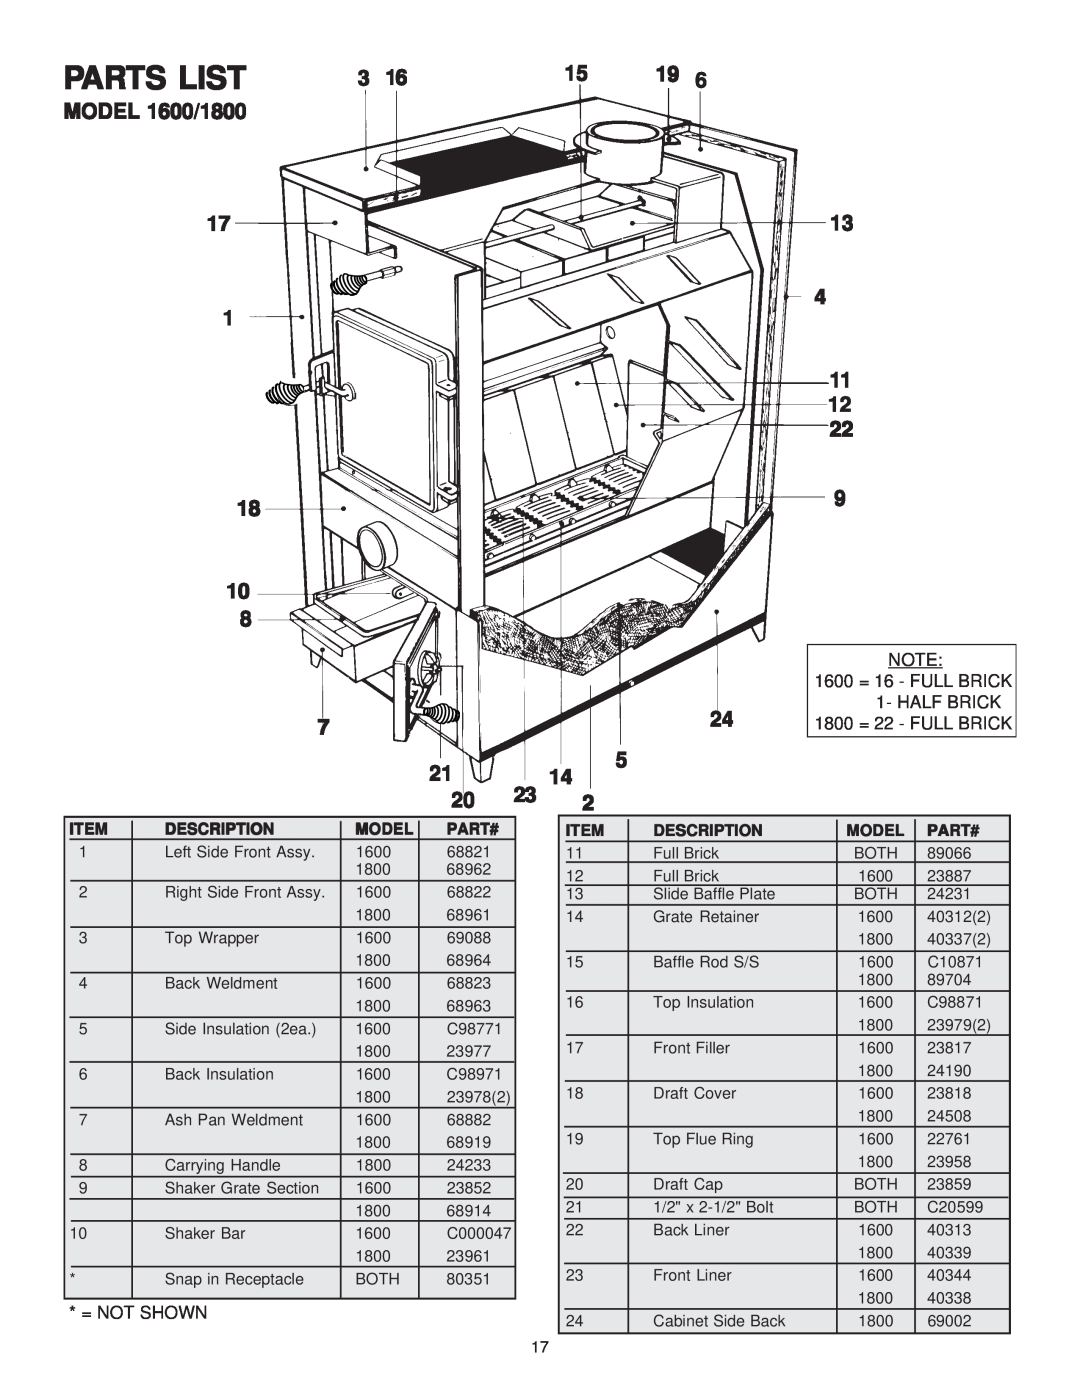 United States Stove 1800GC manual Parts List, MODEL 1600/1800, Description, Model, Part# 